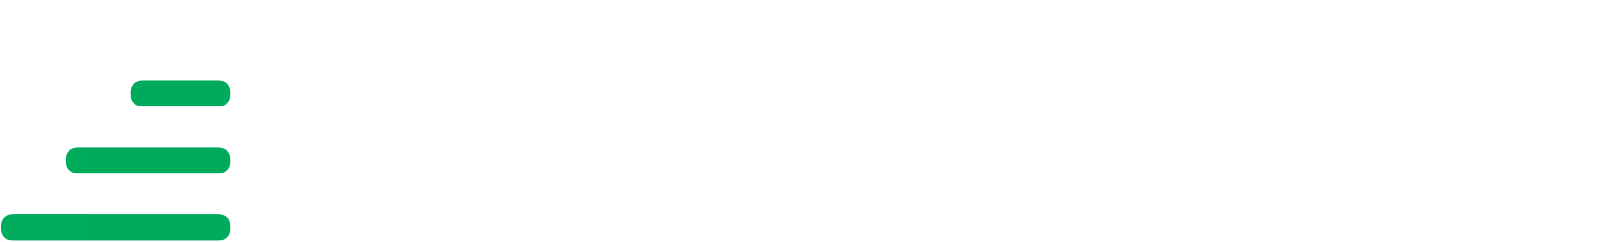 Transurban logo large for dark backgrounds (transparent PNG)